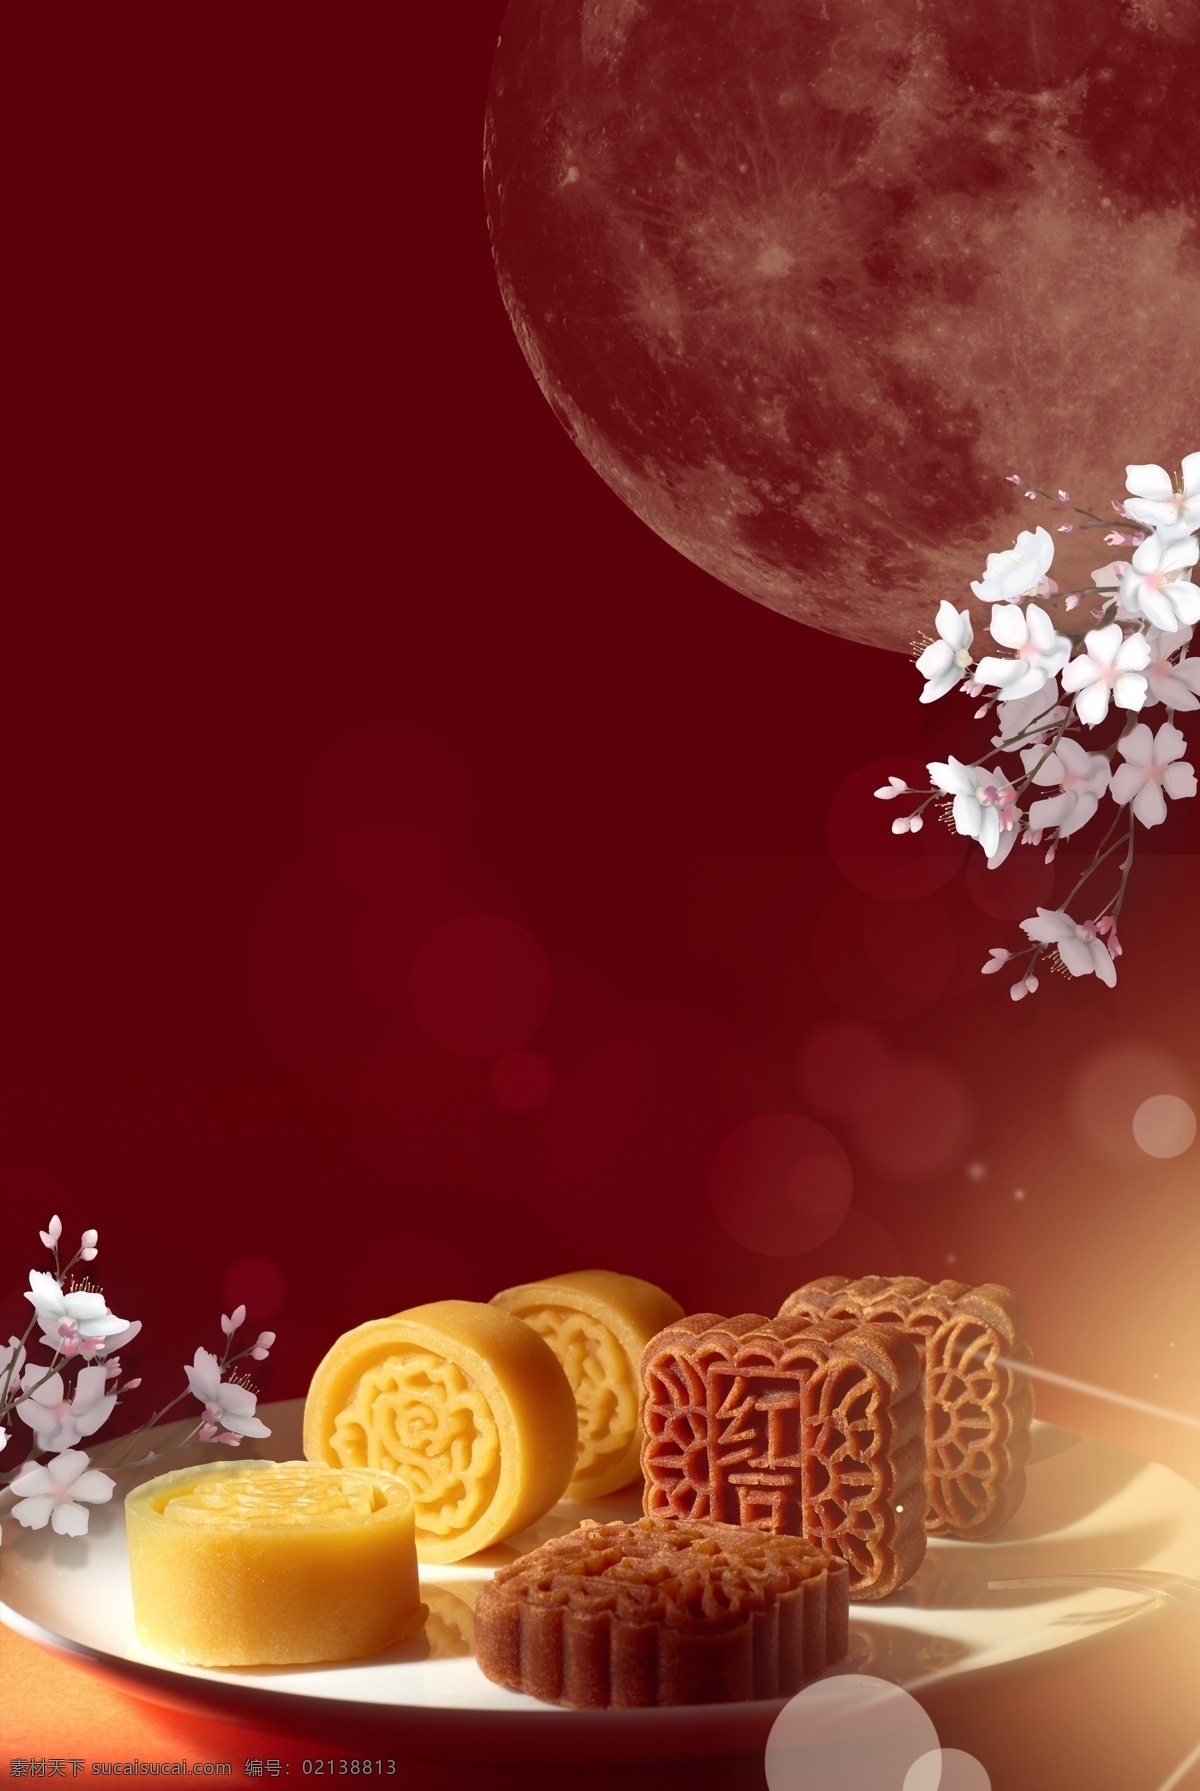 夏季 美食节 传统 冰 皮 月饼 中式 糕点 h5 海报 红色 传统美食 甜品 冰皮月饼 宣传